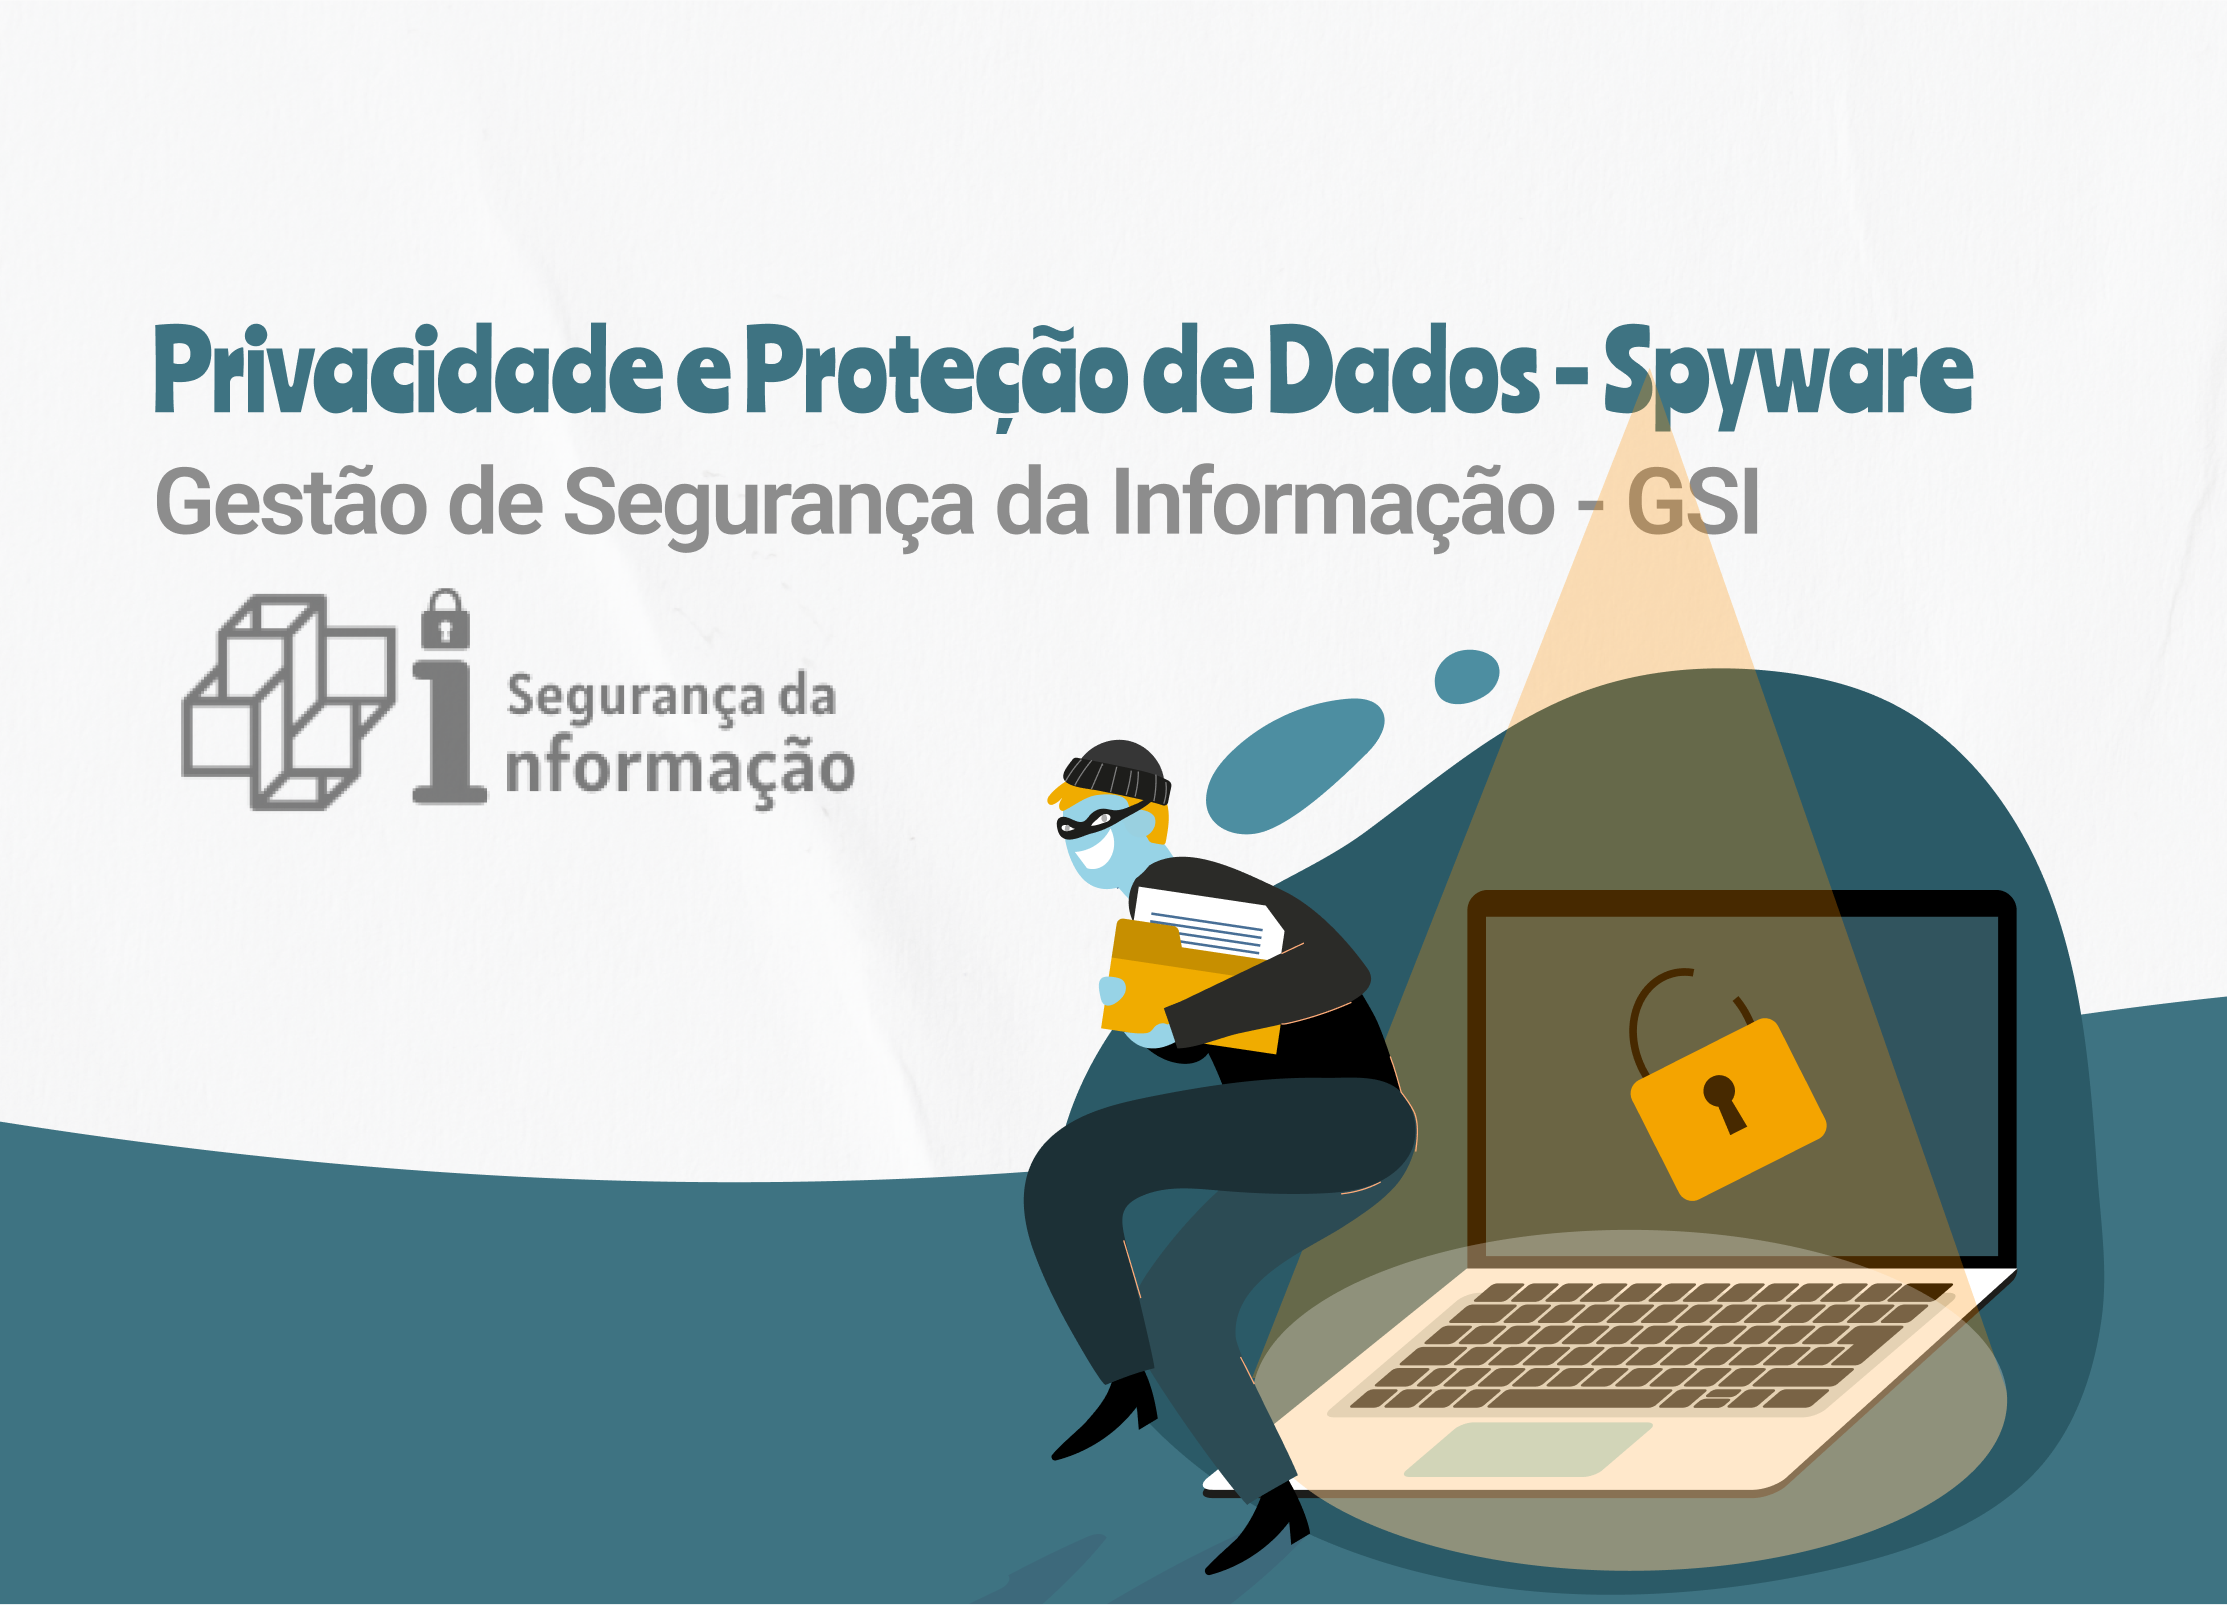 Privacidade e Proteção de Dados - Spyware